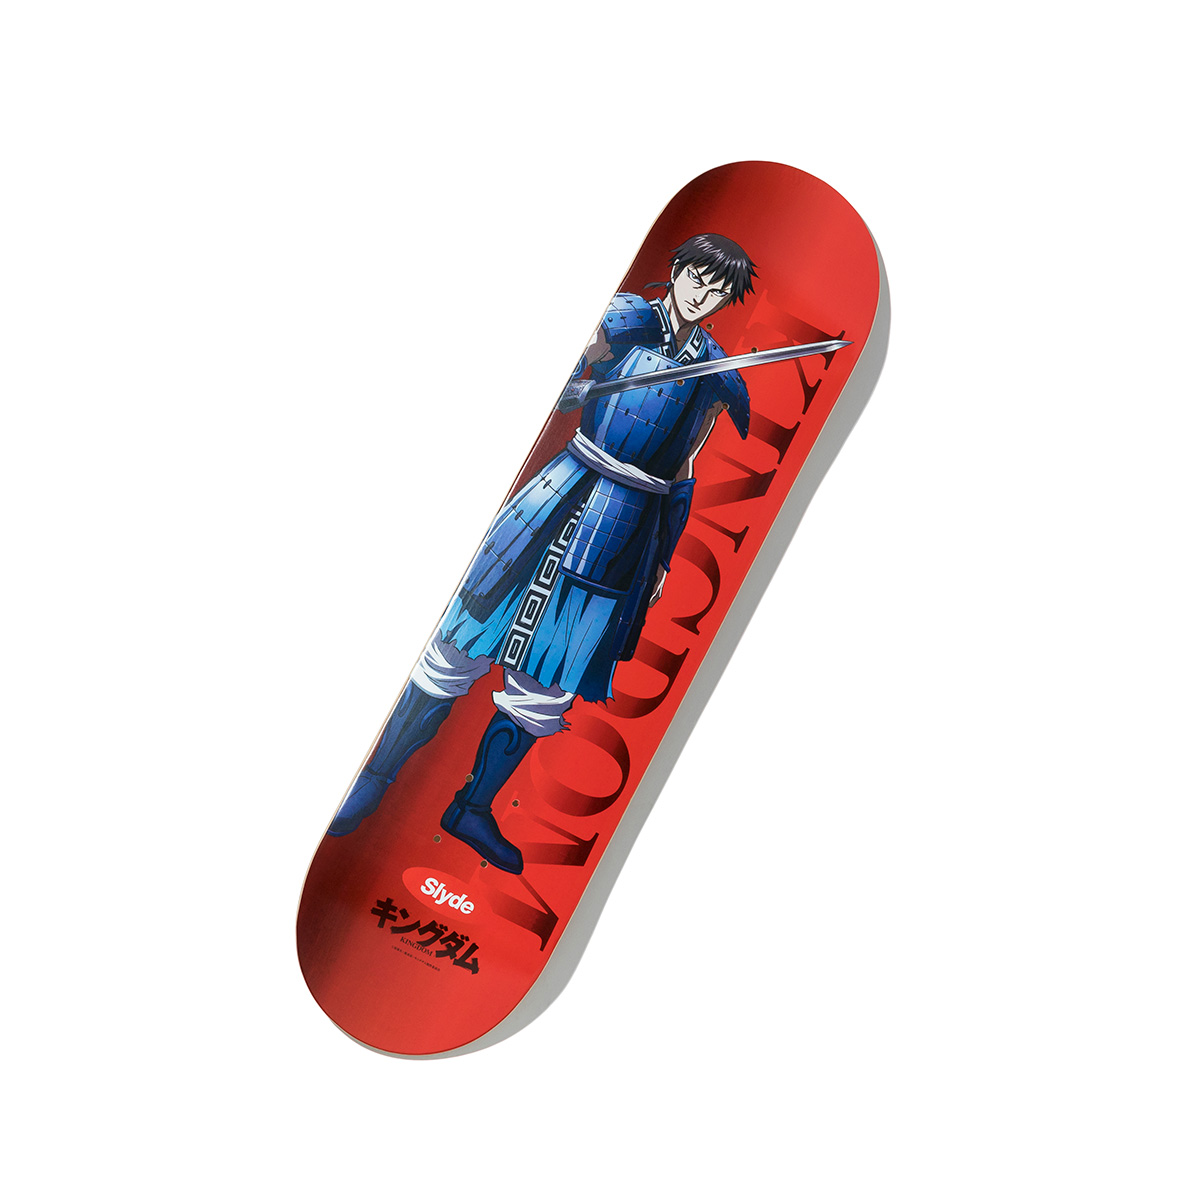 楽天市場 Slyde Kingdom Shin Skate Deck スライド キングダム シン スケートデッキ Red メンズ スケートボード su S Atmos Tokyo